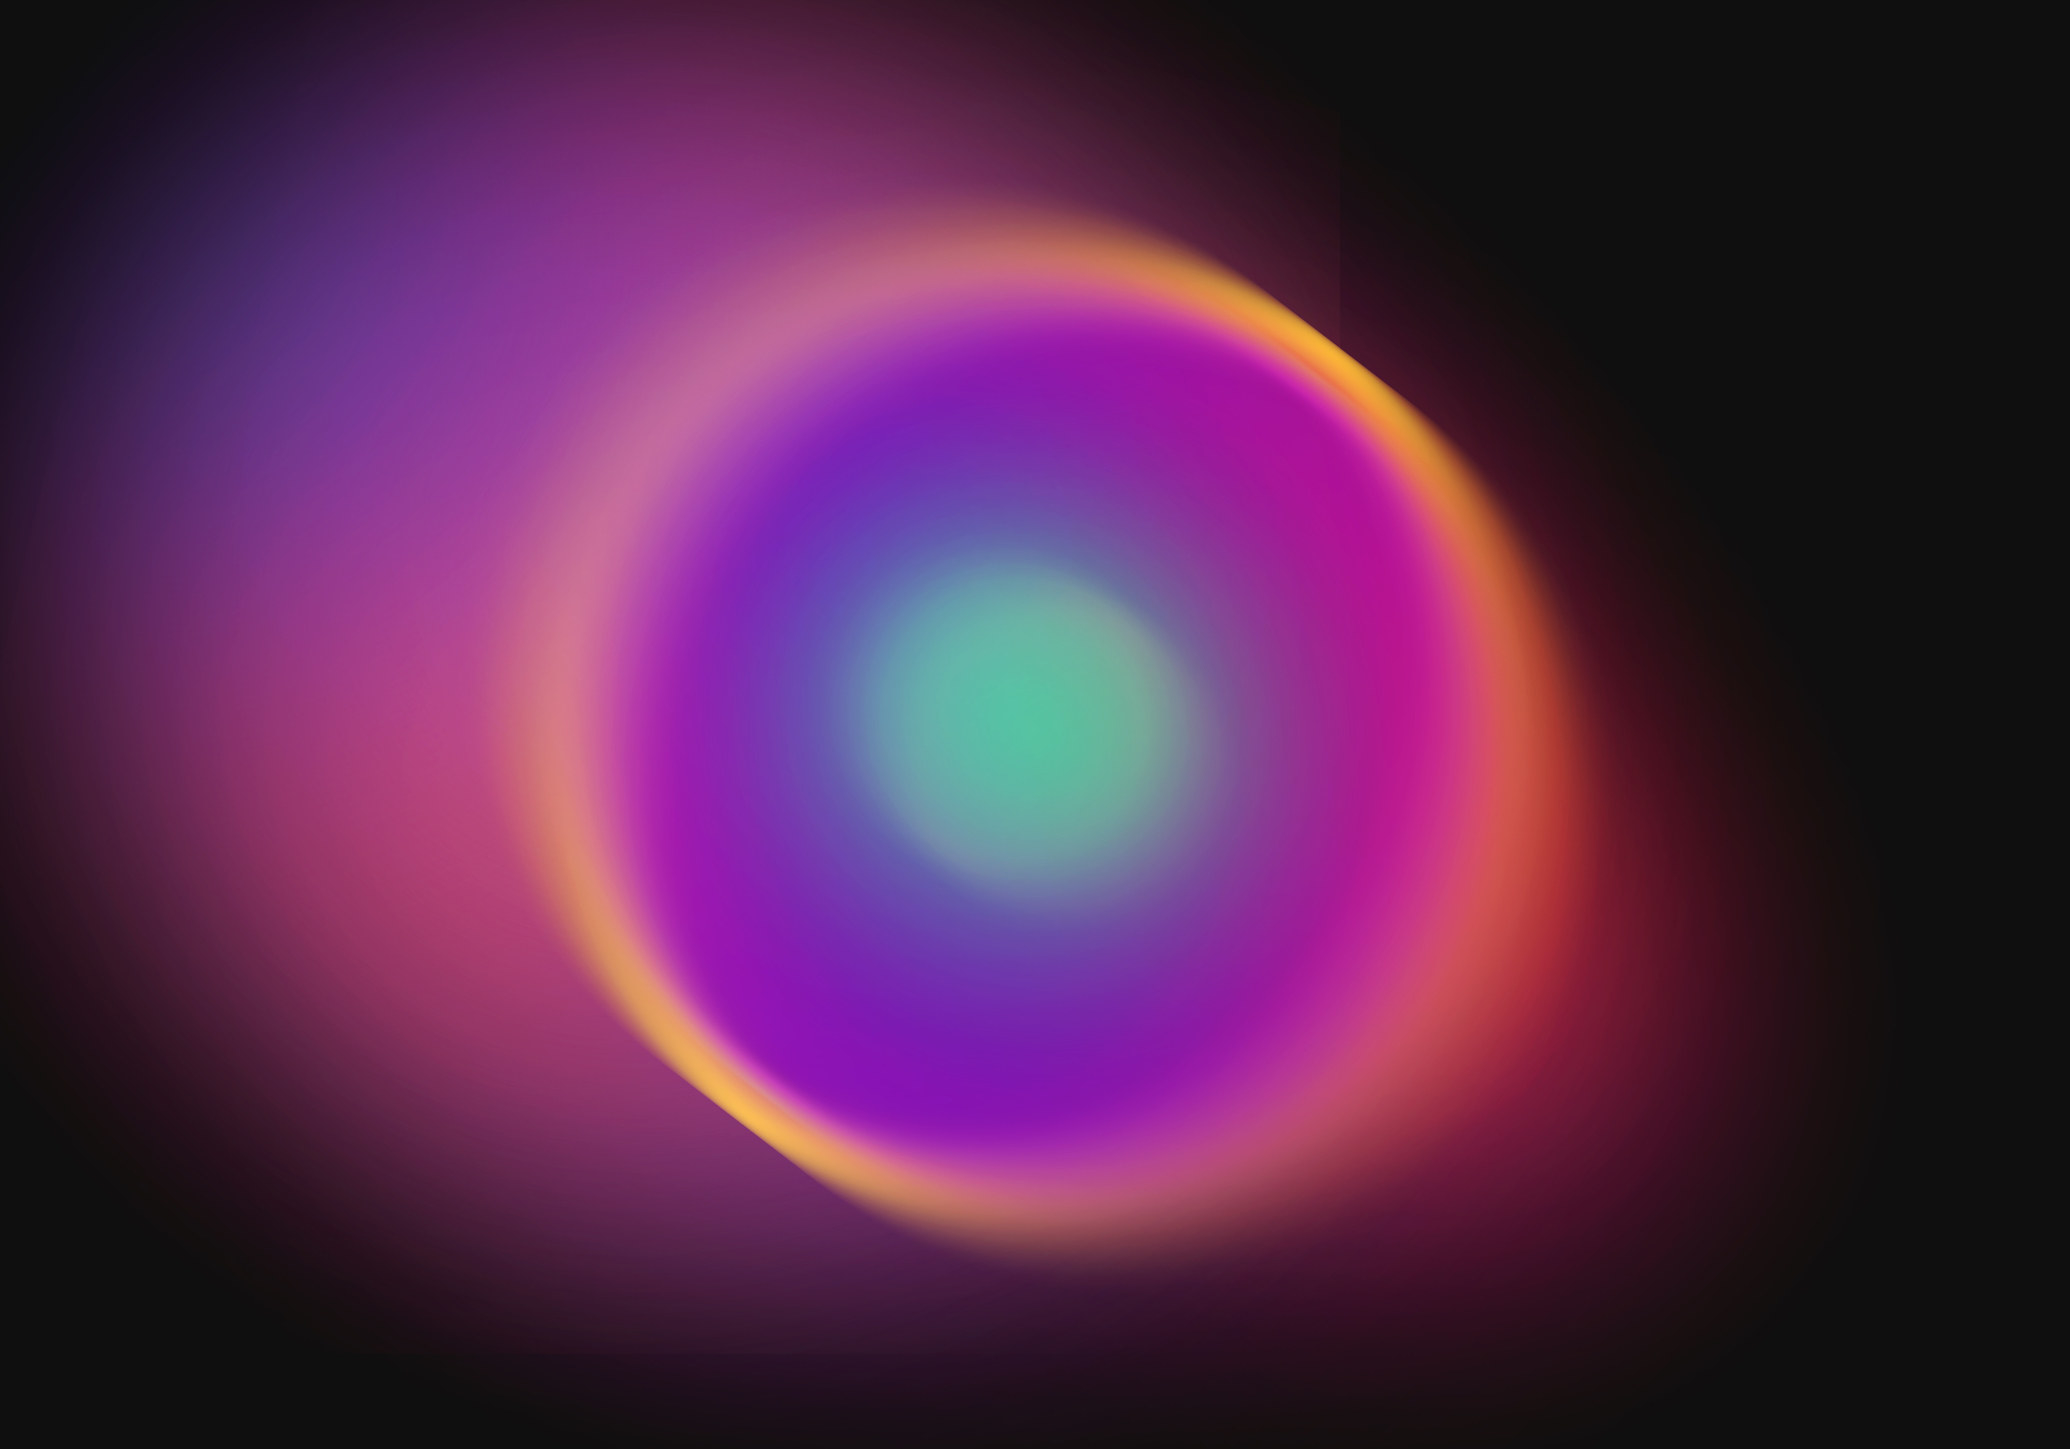 A multicolored orb